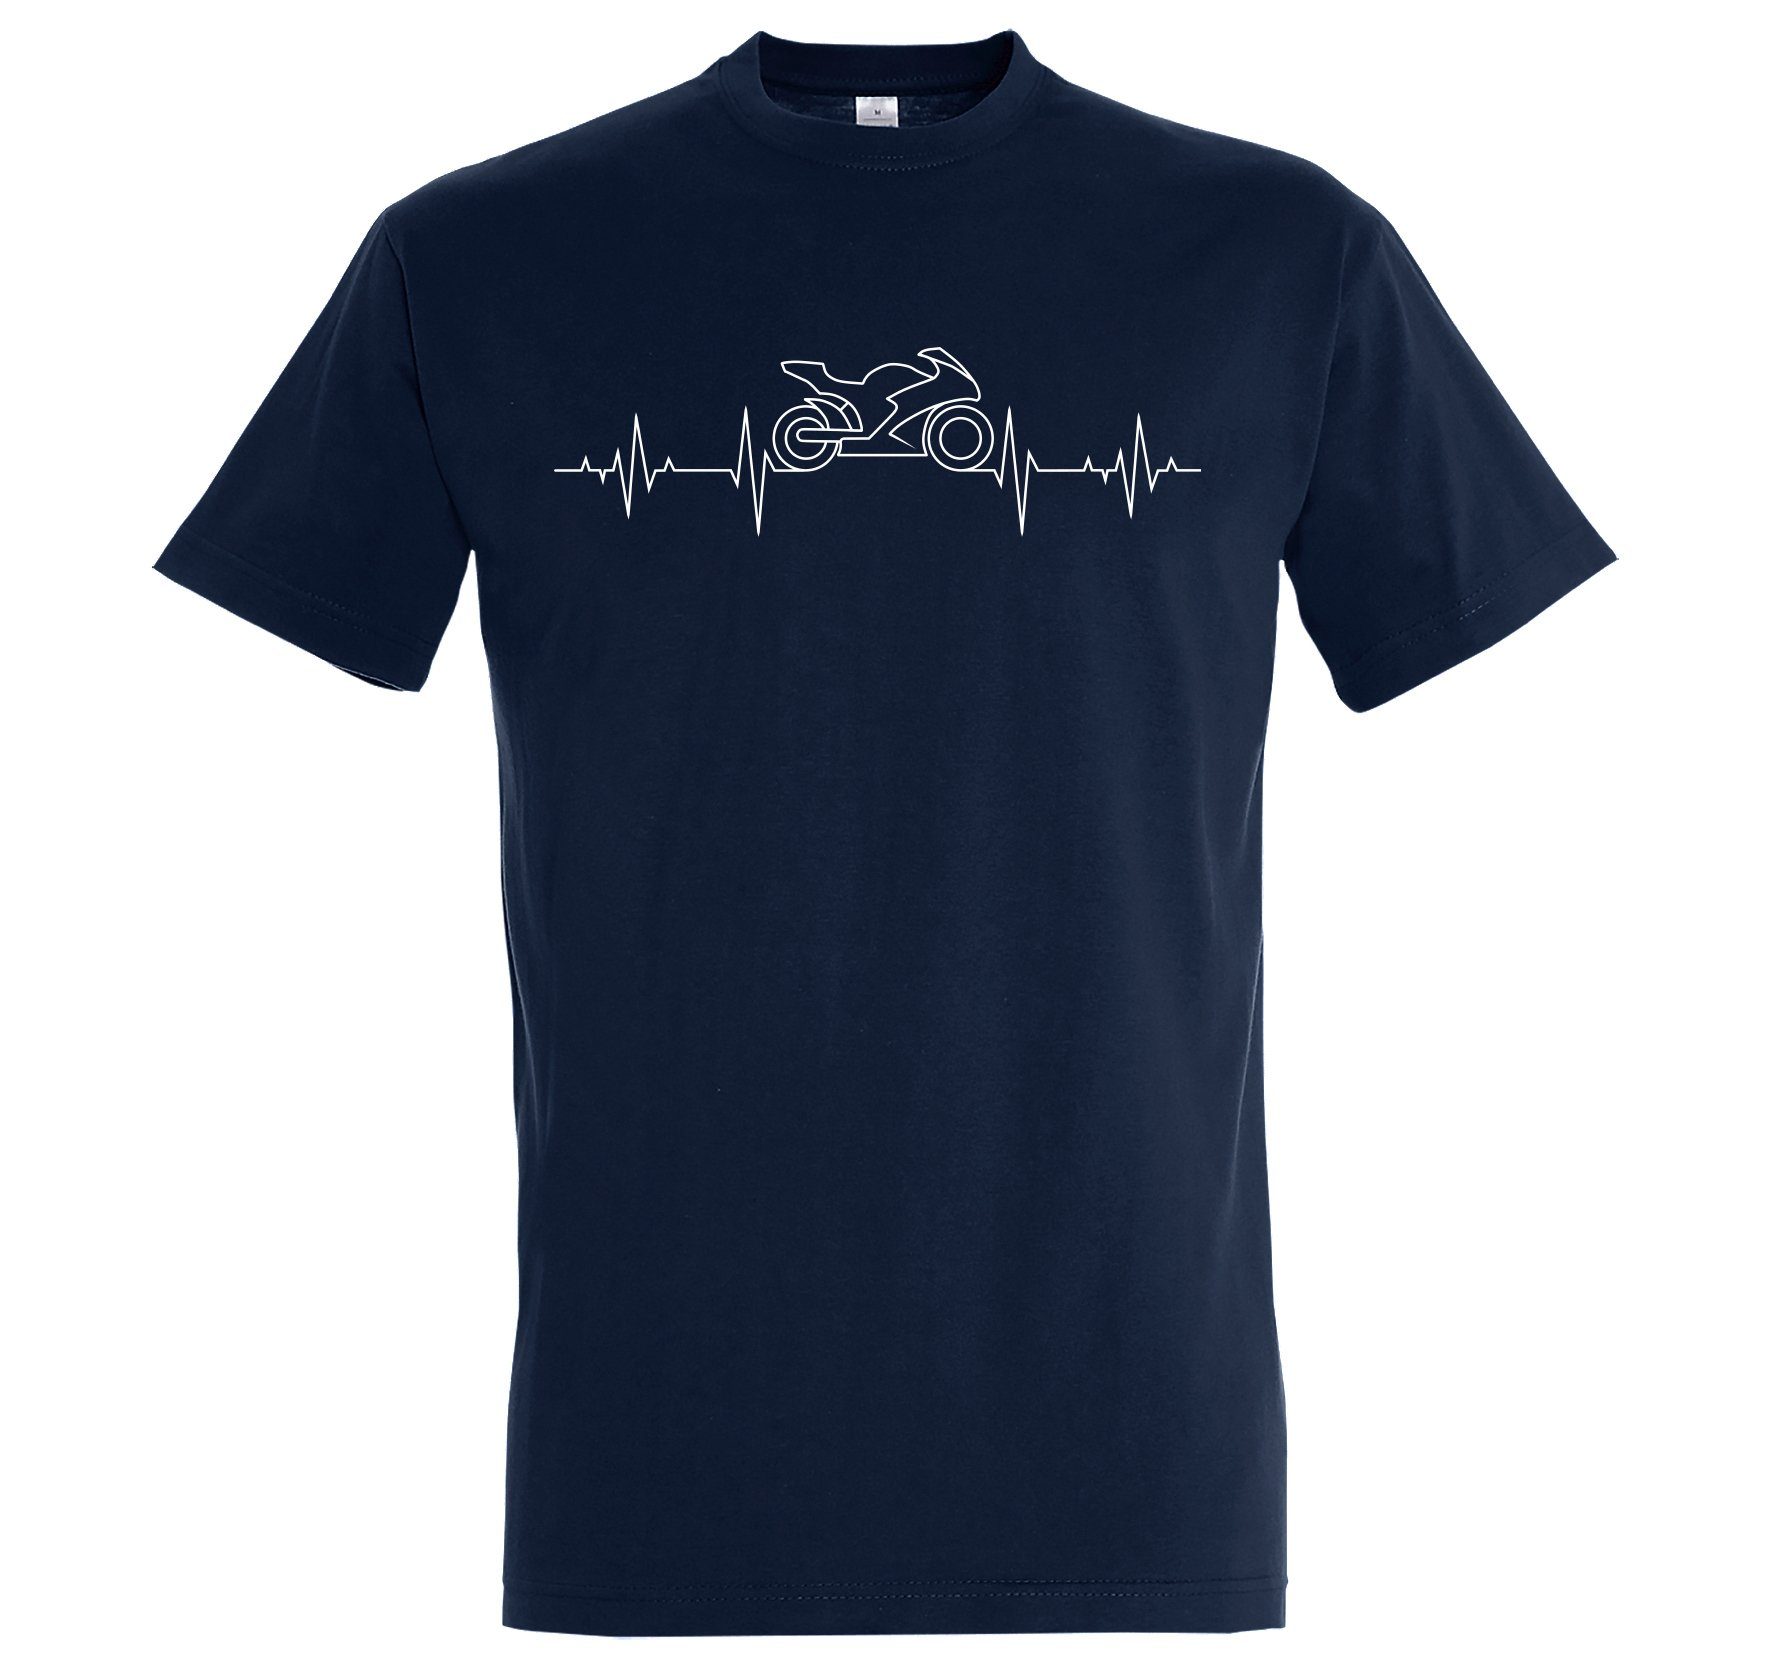 Print-Shirt Herren Aufdruck Youth Bike mit Navyblau modischem Designz Heartbeat T-Shirt Motorrad